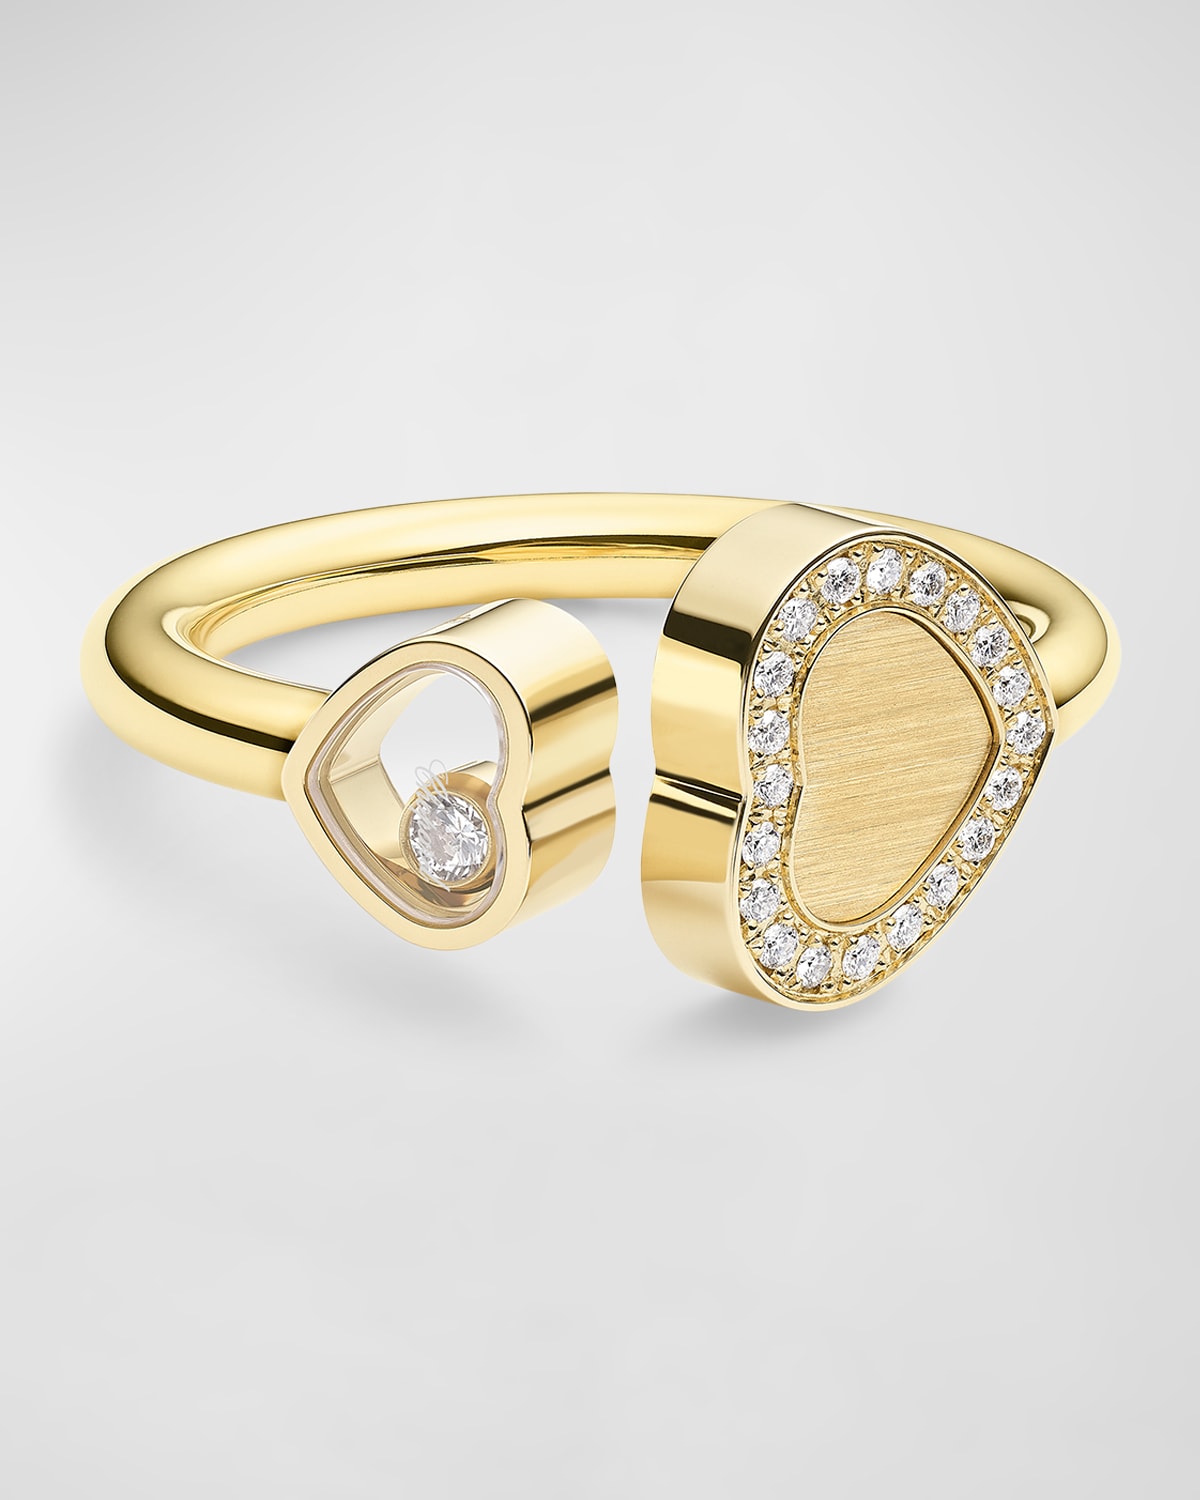 Happy Hearts 18K Yellow Gold Diamond Ring, EU 53 / US 6.25